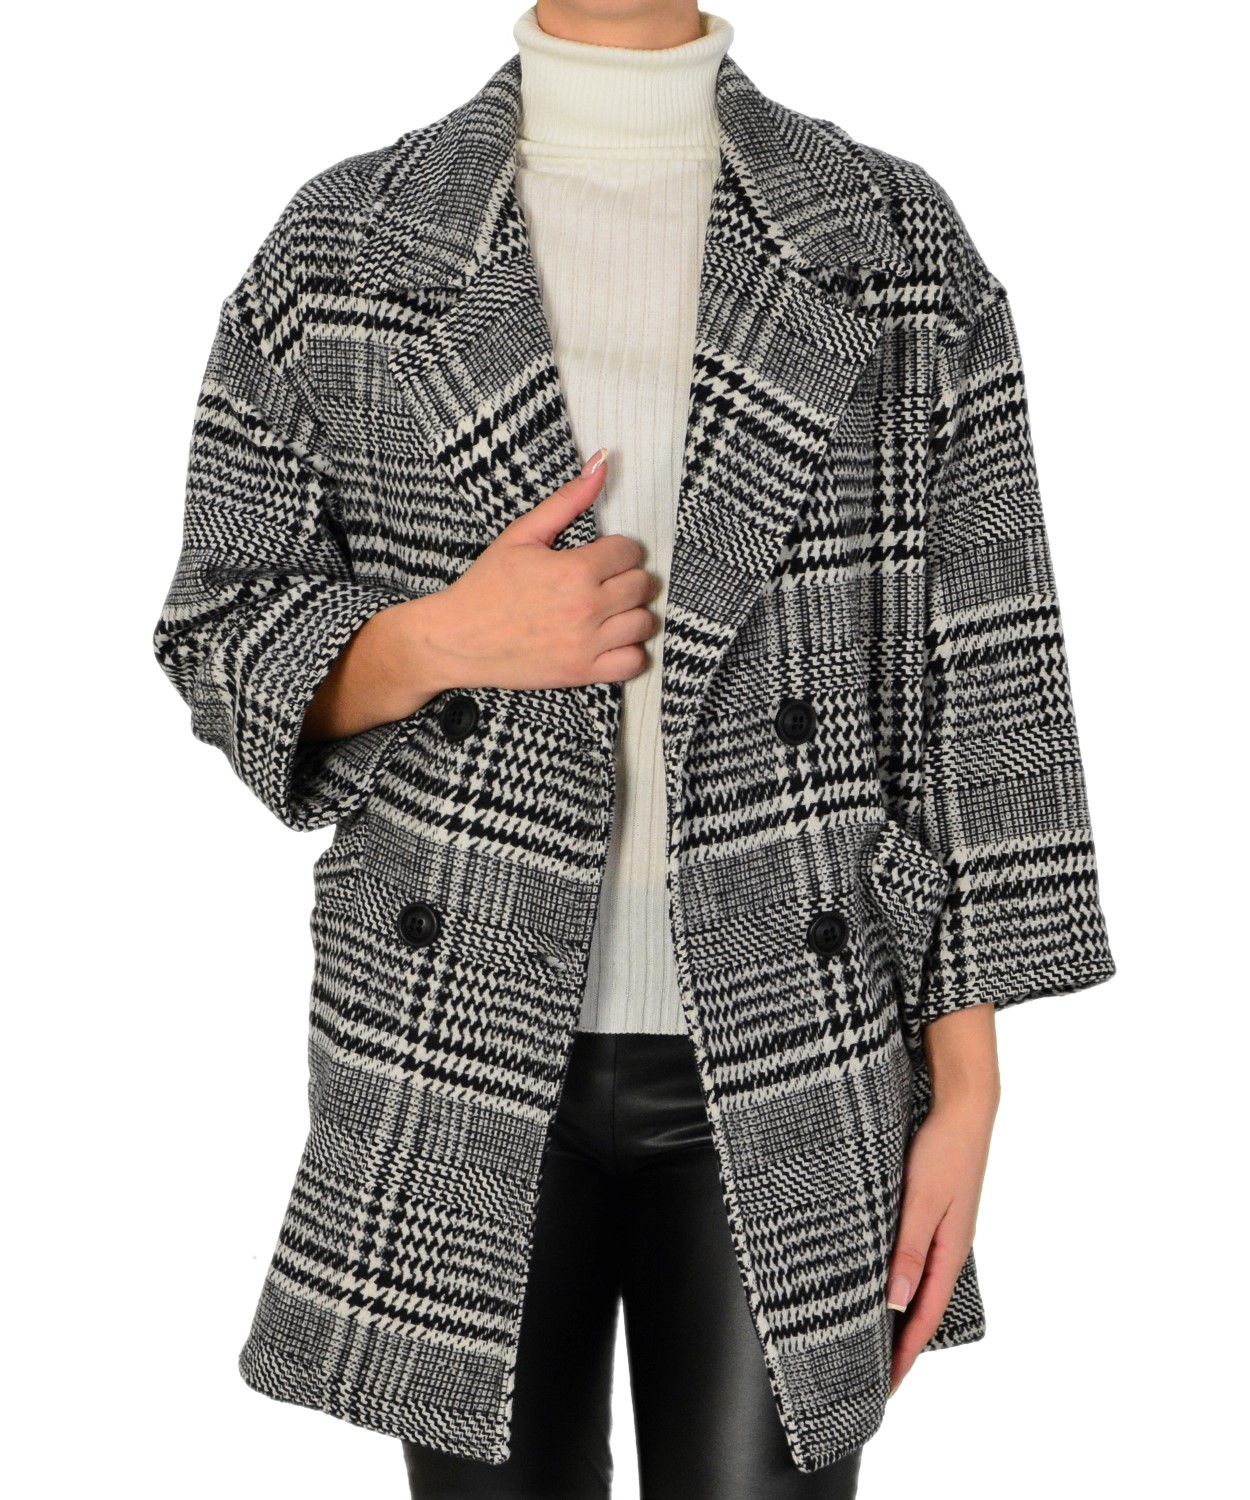 Γυναικείο παλτό καρό ασπρόμαυρο με ζακάρ μοτίβο Brown Sugar 013905032